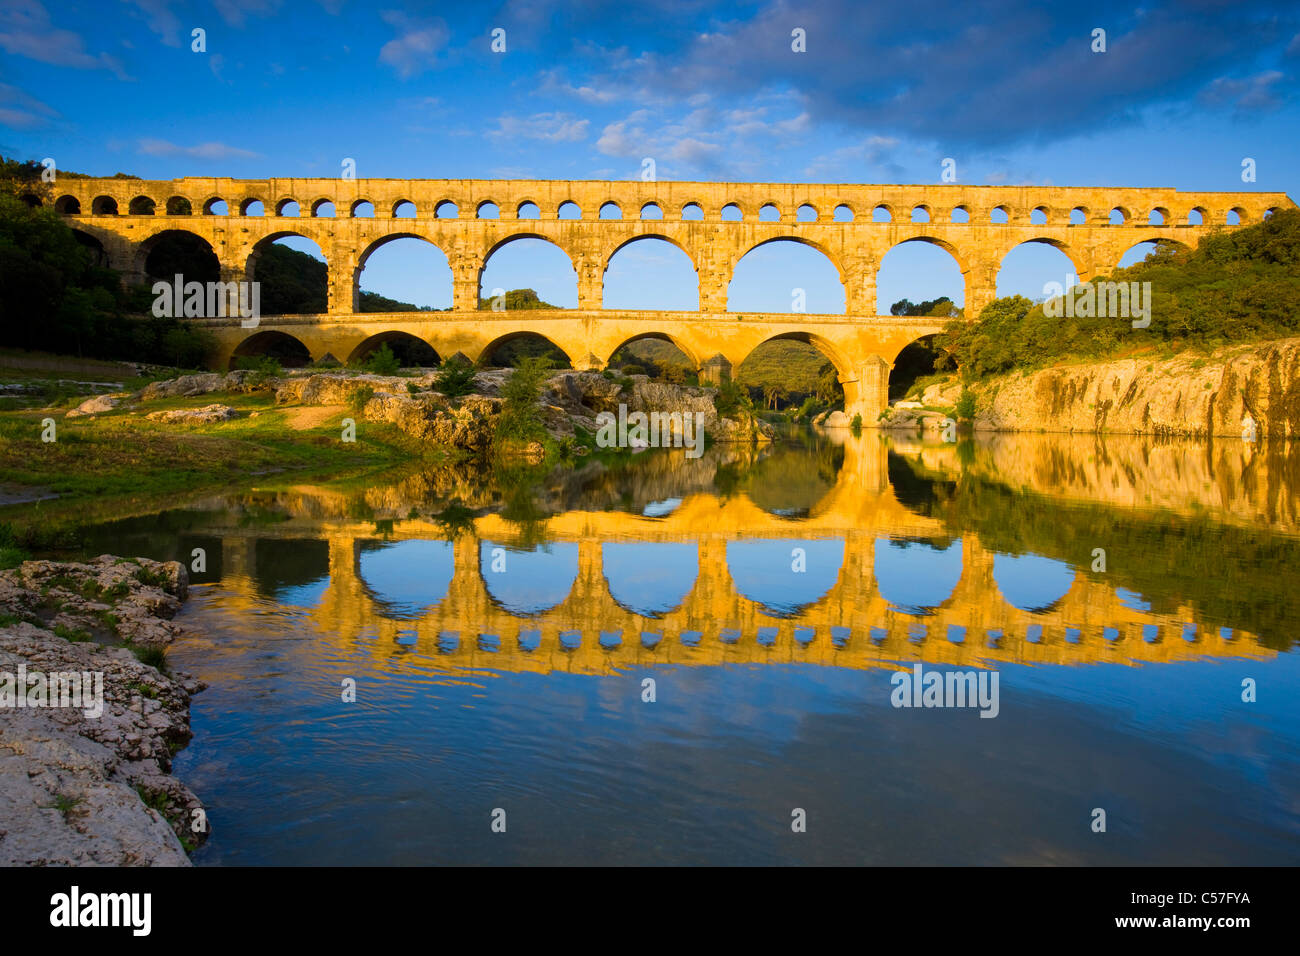 Pont du Gard, France, Europe, Languedoc-Roussillon, river, flow, bridge, aqueduct, Roman site, place, reflection, morning light Stock Photo